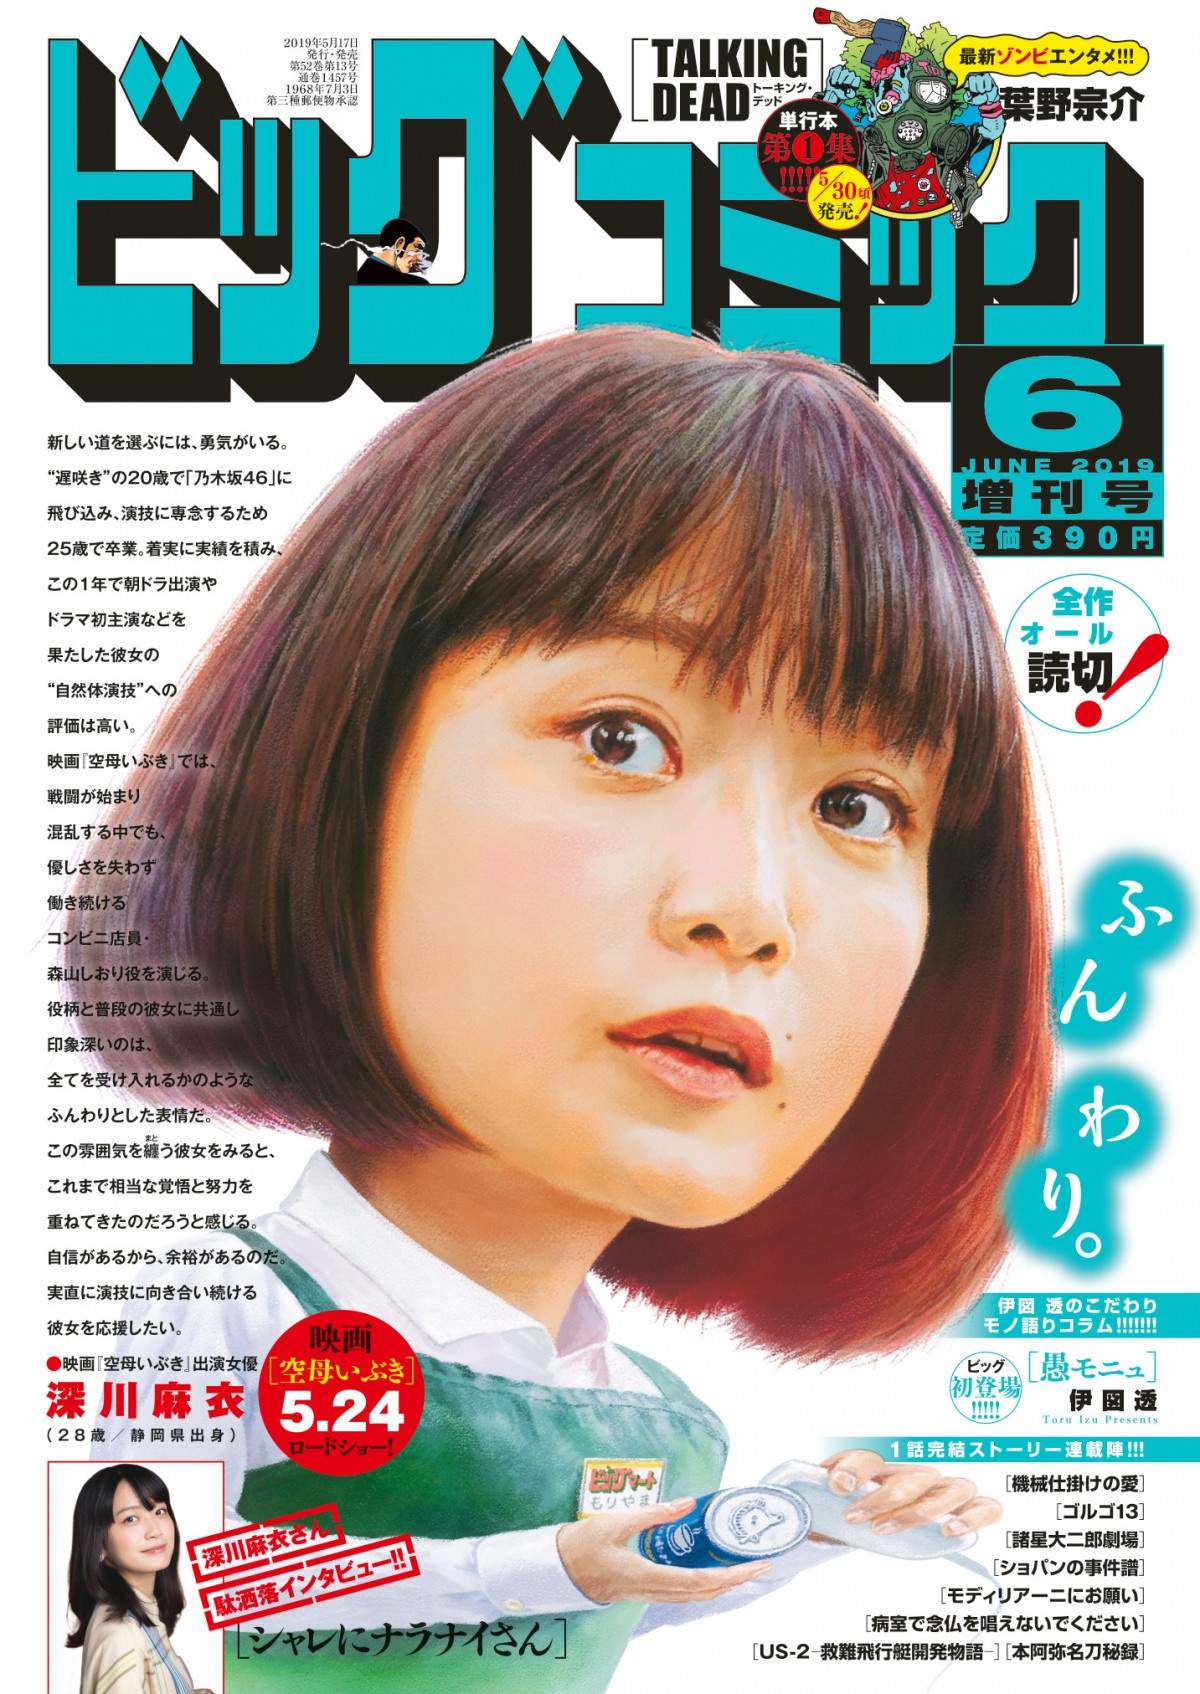 深川麻衣 ビッグコミック 表紙に ダジャレに親しみをもつ女優 としてインタビュー記事も Oricon News